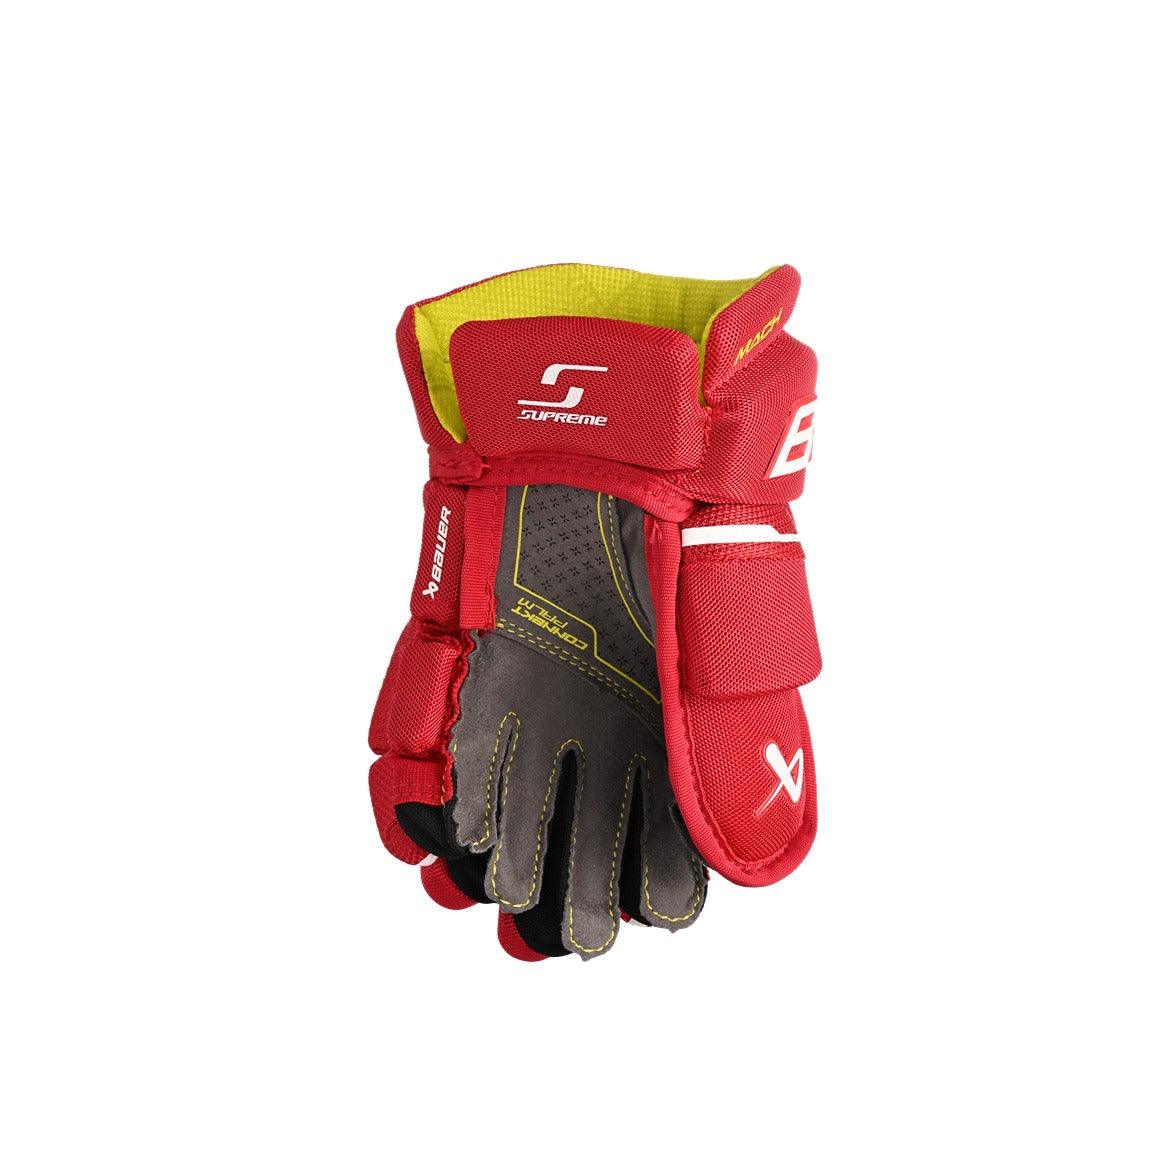 Bauer Supreme Mach Hockey Gloves